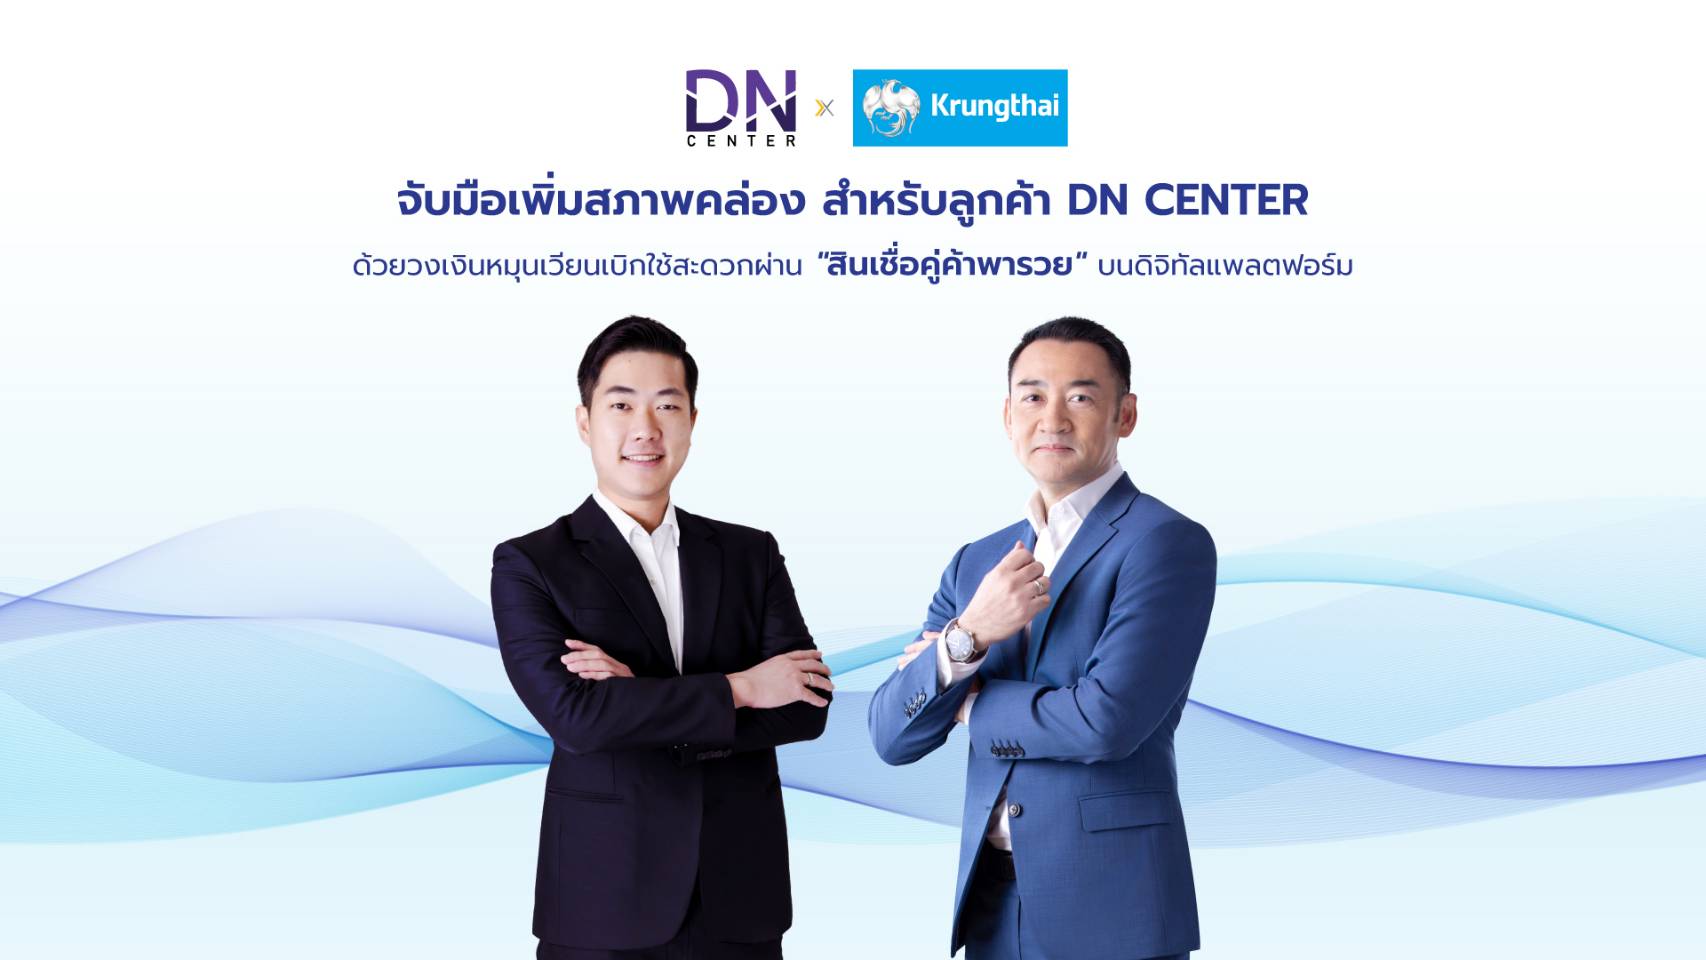 รัฐบาลไทย-ข่าวทำเนียบรัฐบาล-Dn Center ผนึก ธ.กรุงไทย  นำดิจิทัลแพลตฟอร์มด้านการเงินให้ลูกค้าร้าน ขายยาทั่วประเทศเสริมสร้างศักยภาพธุรกิจผ่านสินเชื่อคู่ค้าพารวย